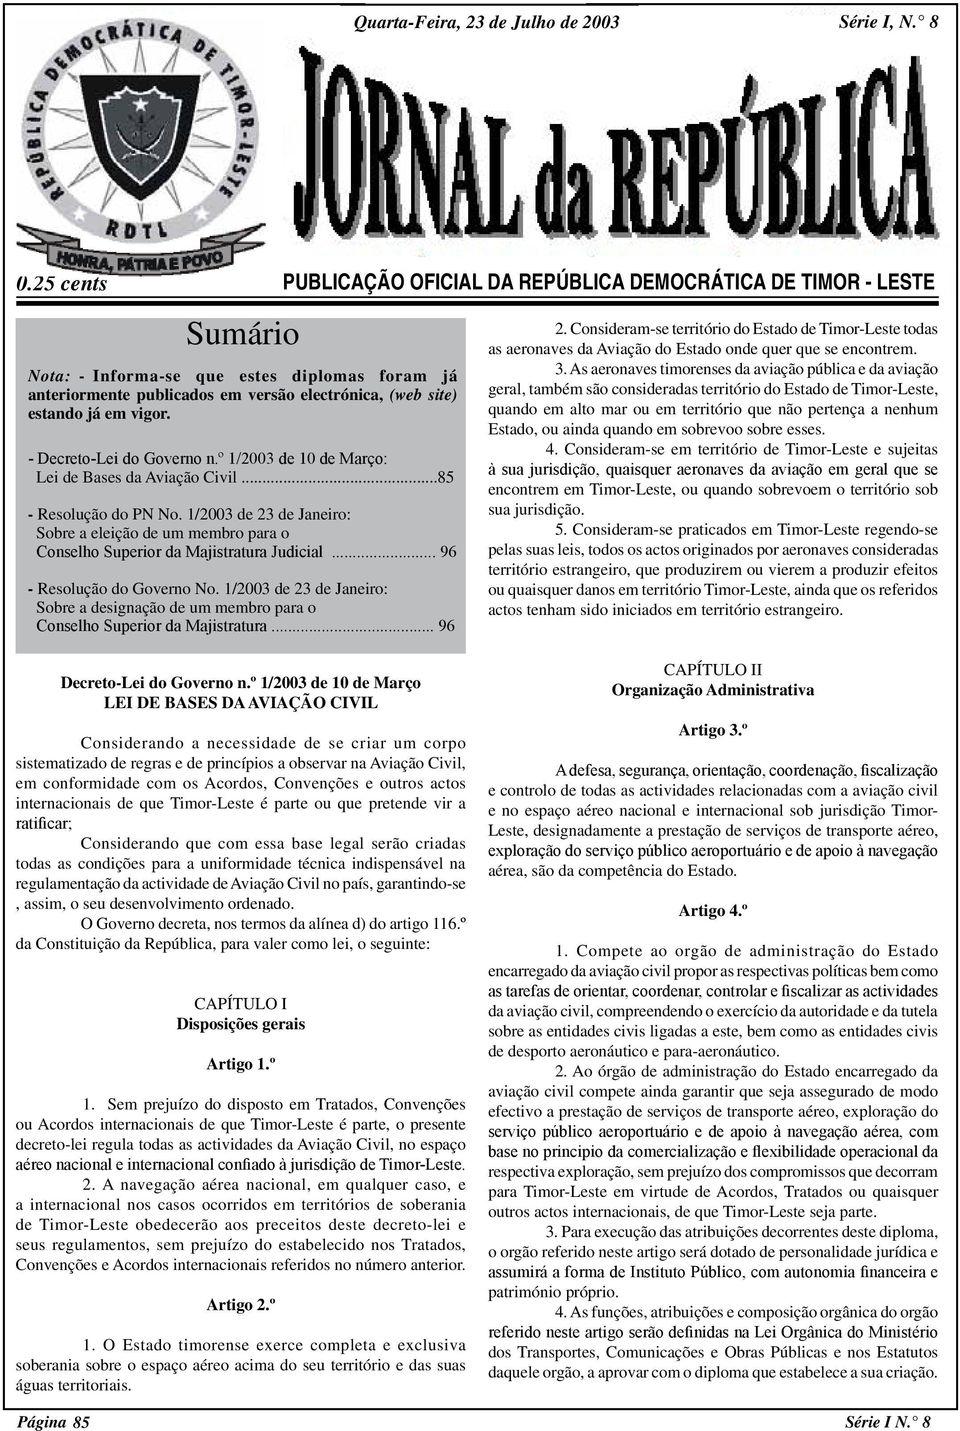 .. 96 - Resolução do Governo No. 1/2003 de 23 de Janeiro: Sobre a designação de um membro para o Conselho Superior da Majistratura... 96 PUBLICAÇÃO OFICIAL DA REPÚBLICA DEMOCRÁTICA DE TIMOR - LESTE 2.